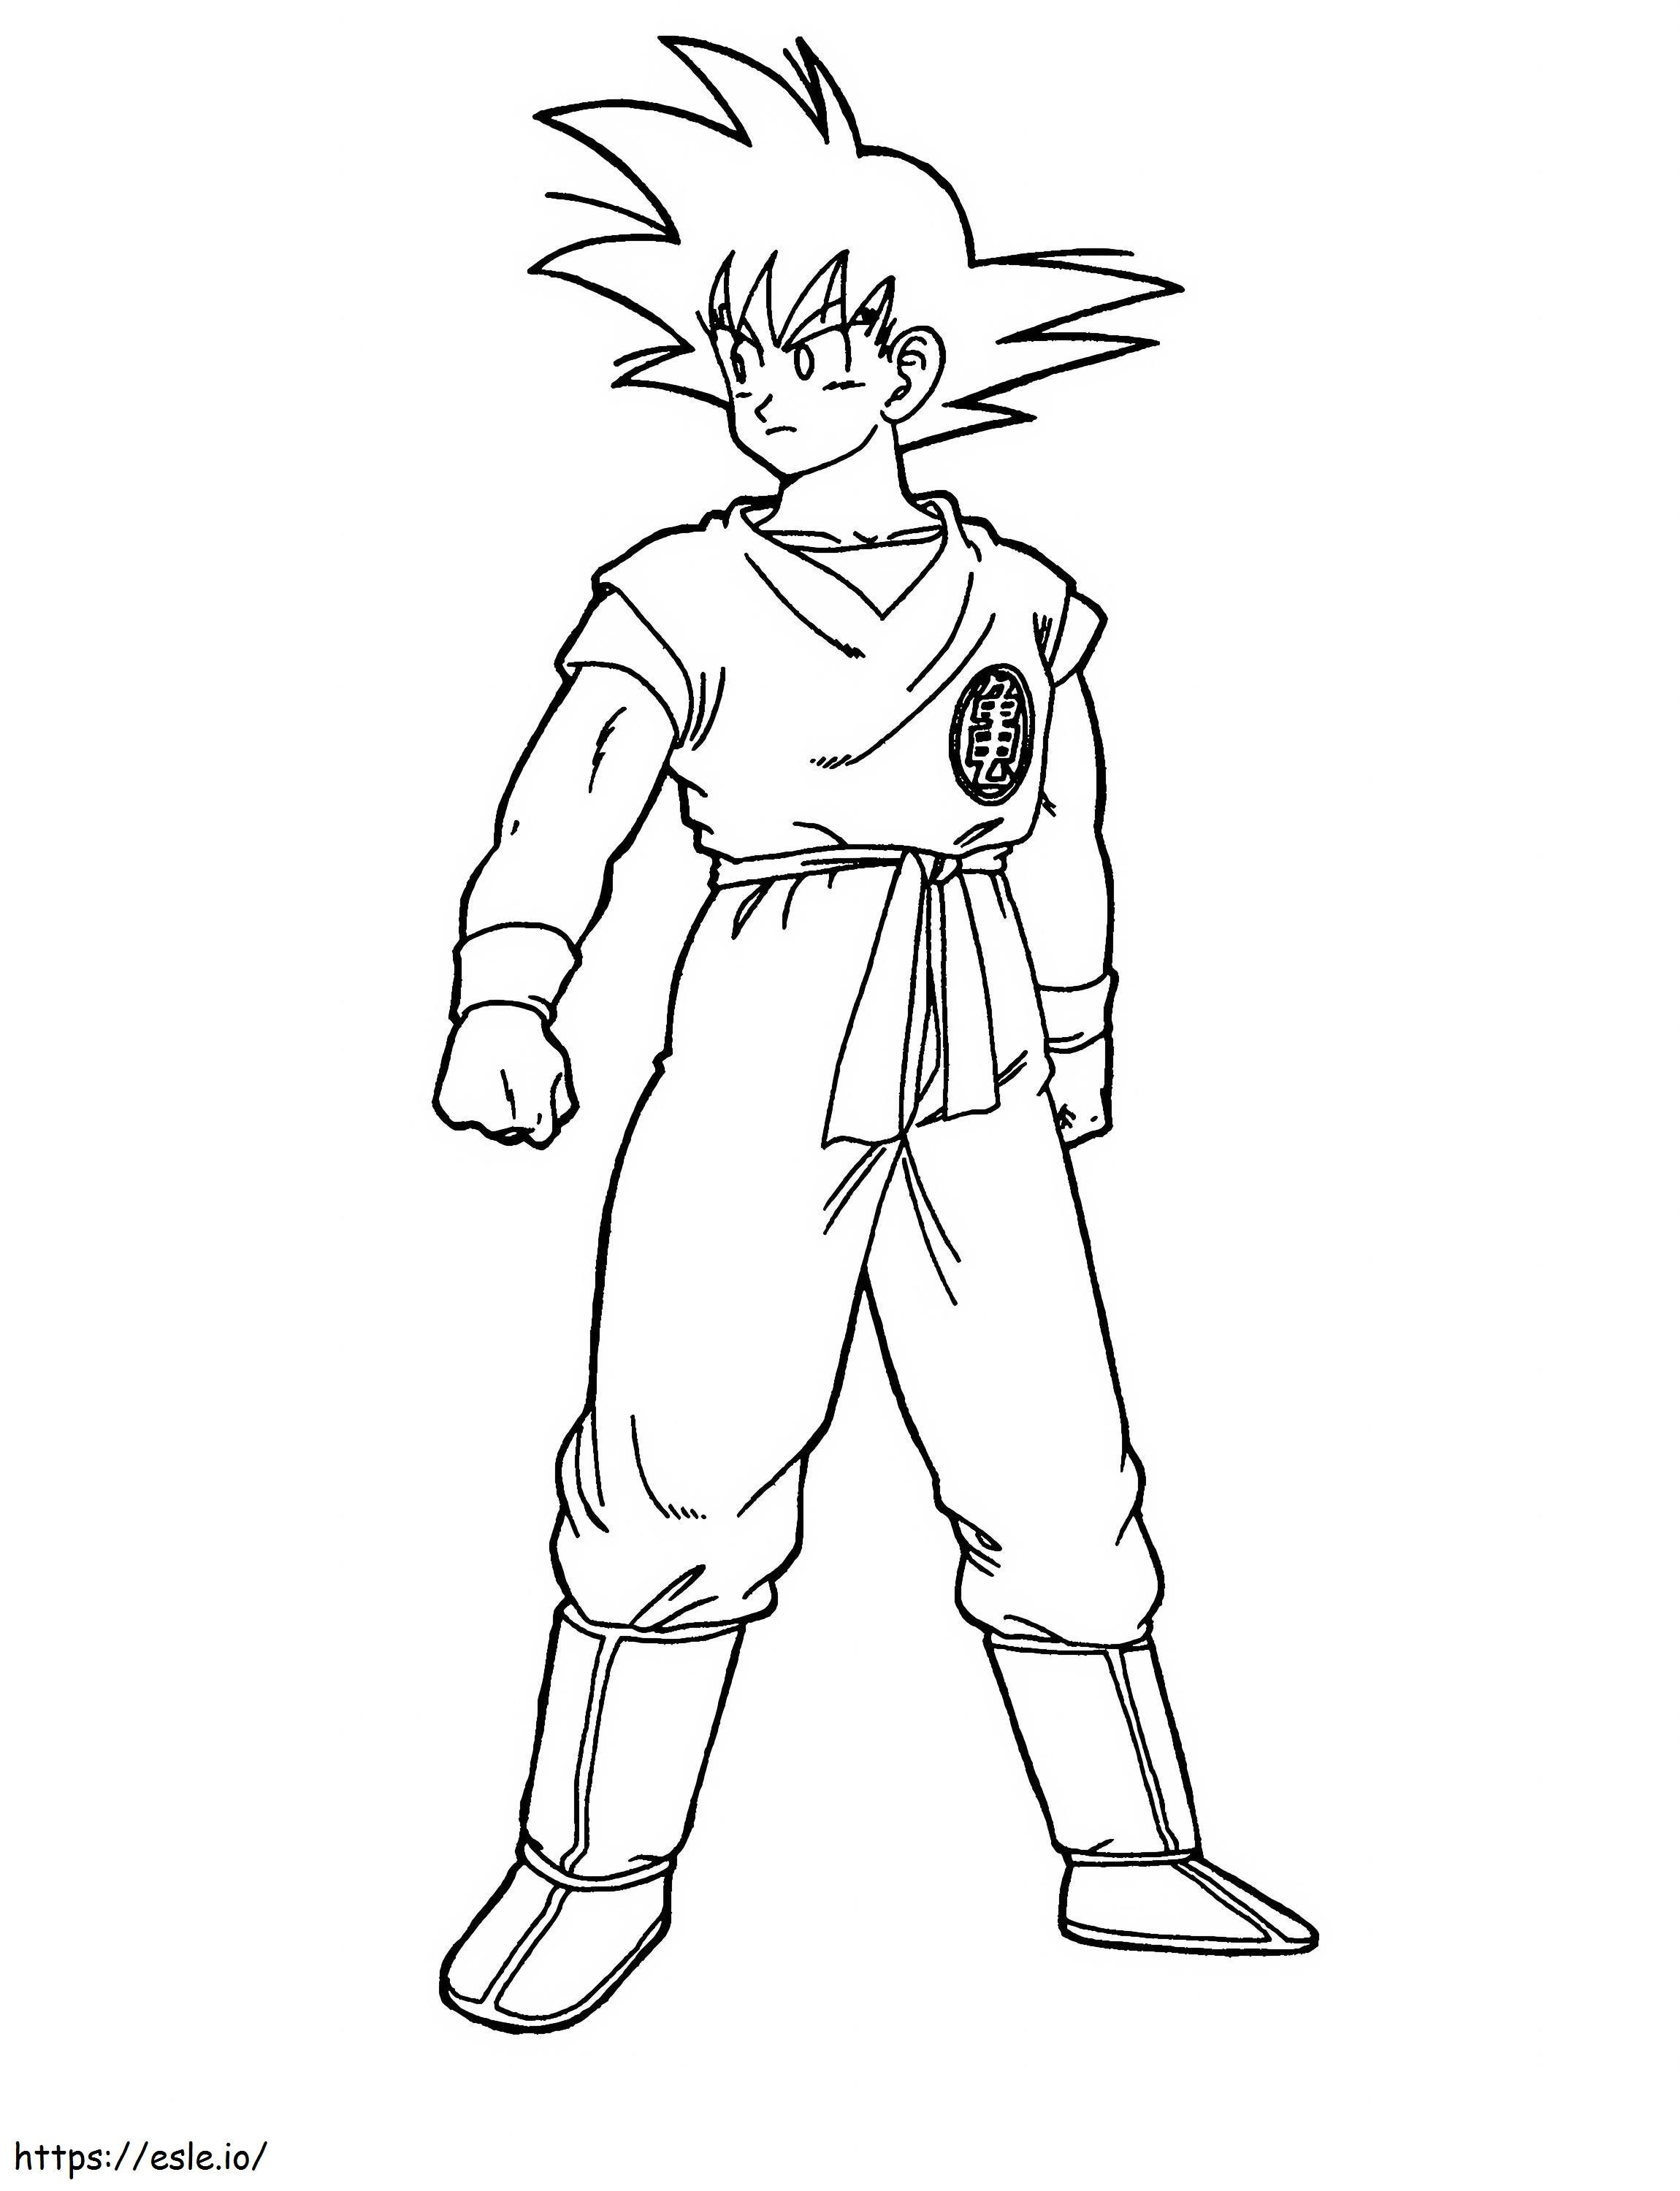 Desenhos de Goku para colorir - Páginas para impressão grátis